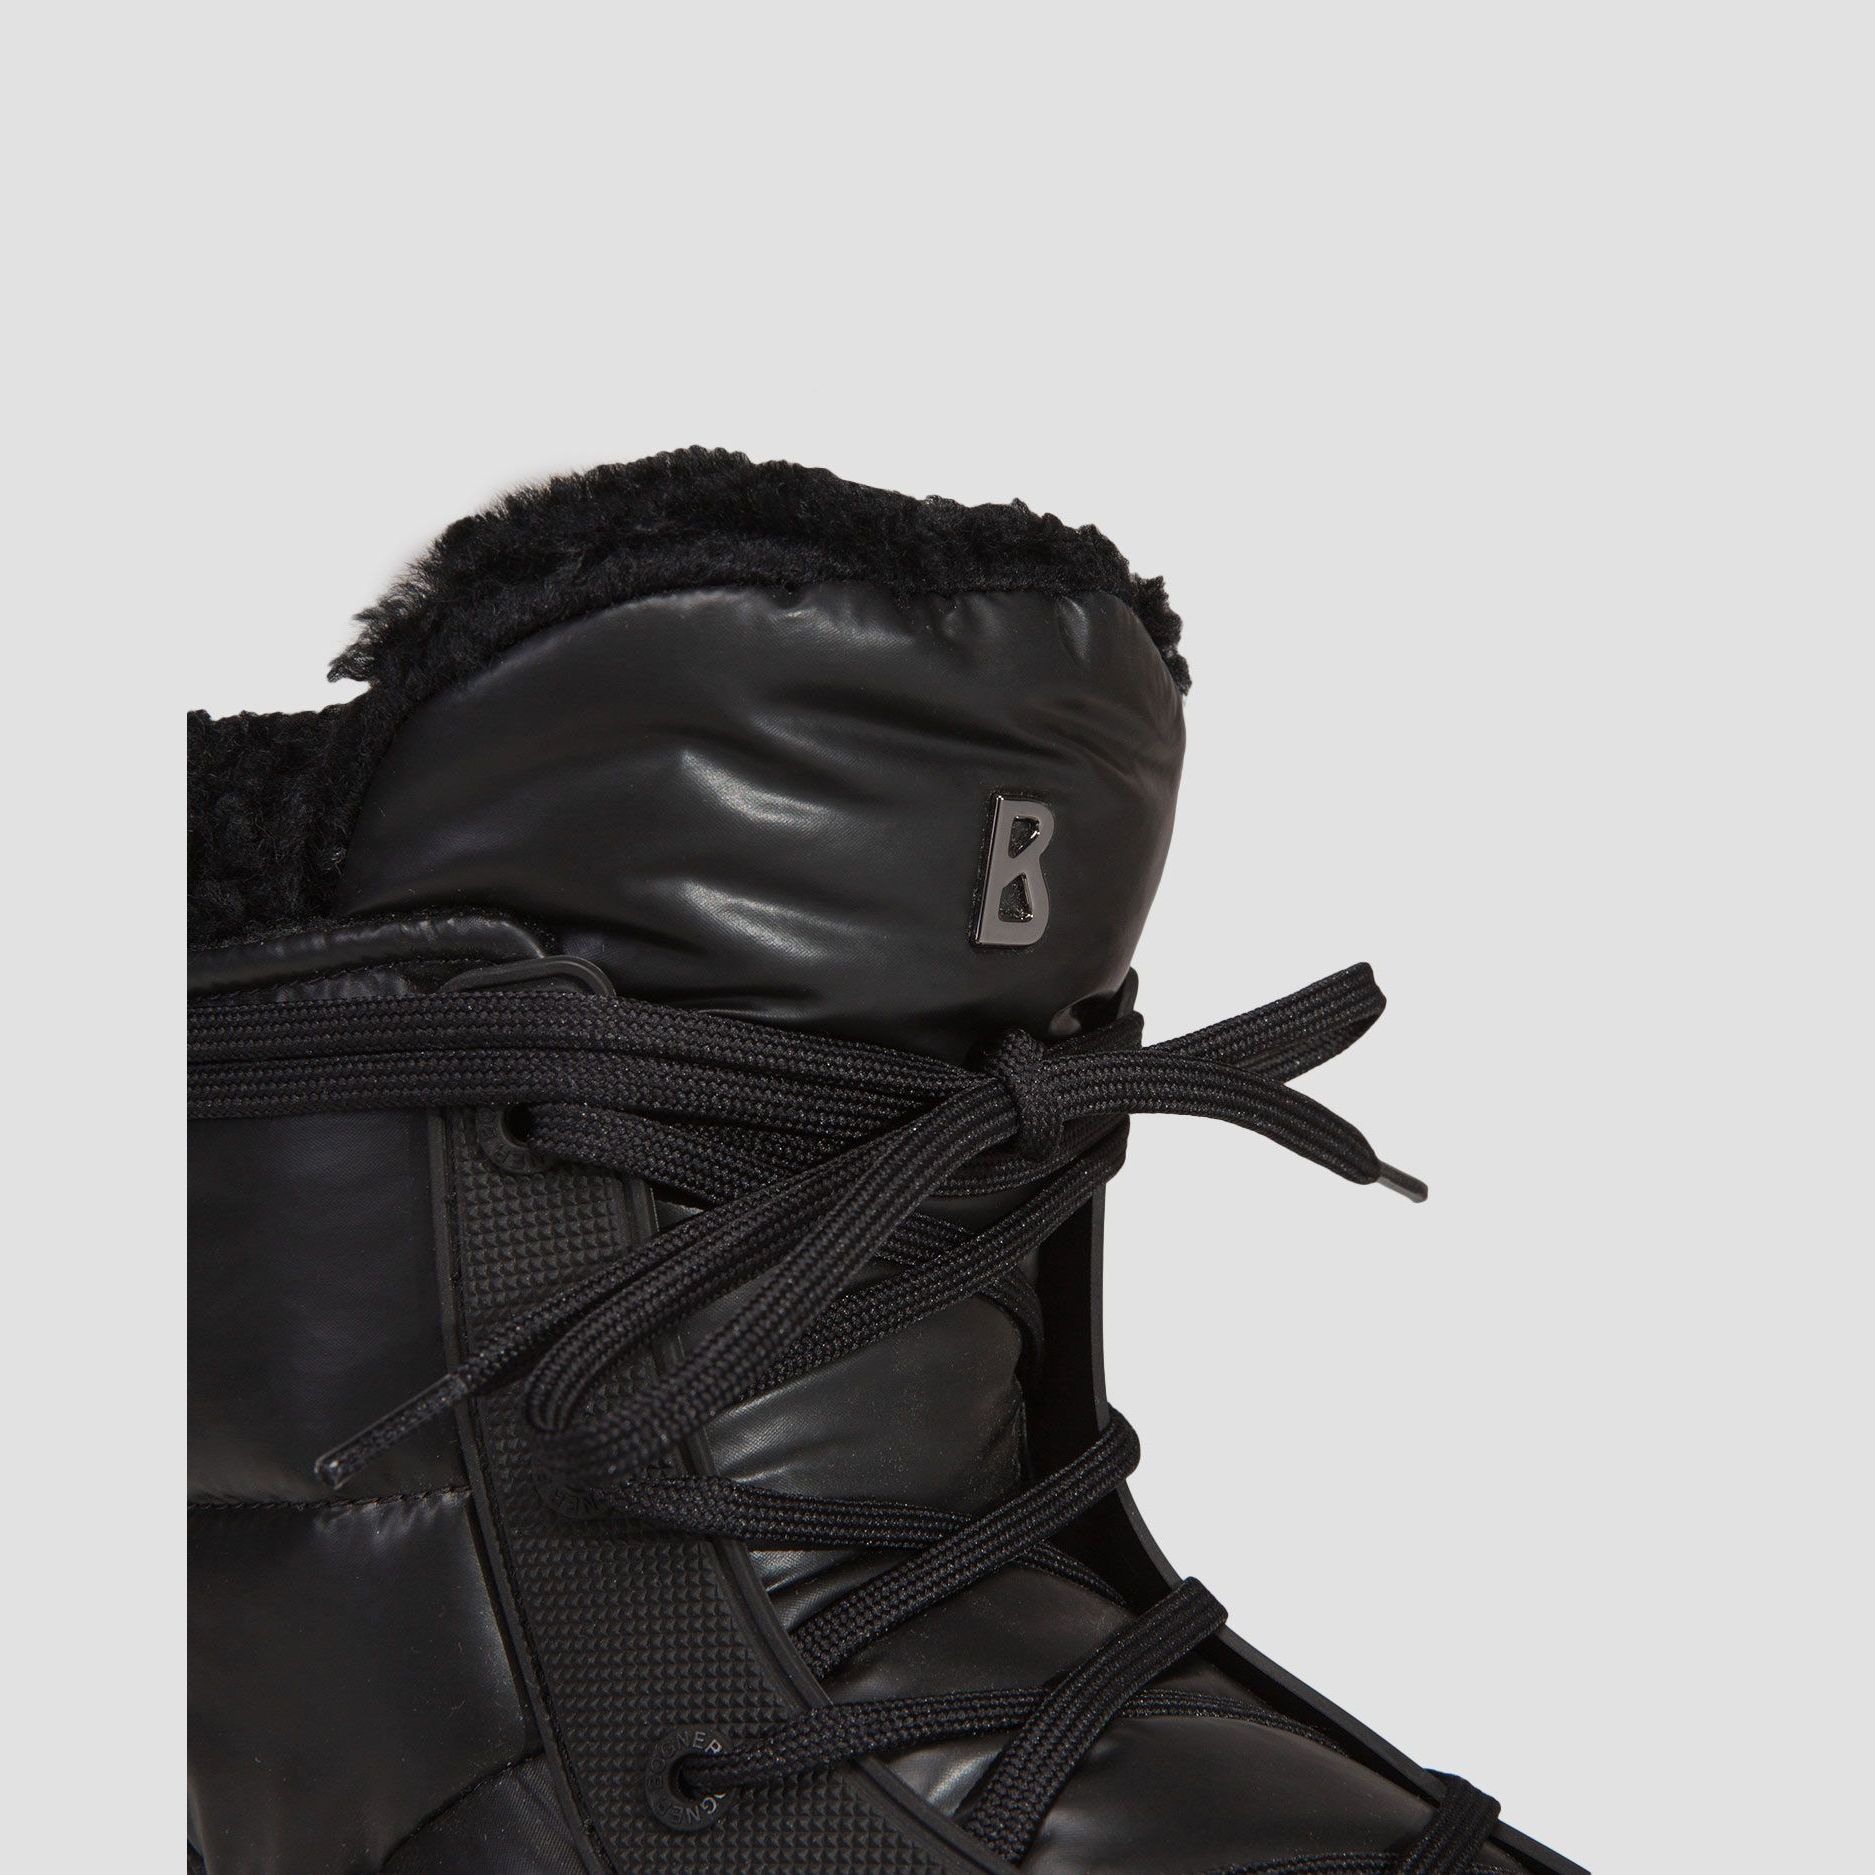 Winter Shoes -  bogner La Plagne 2B Snow boots